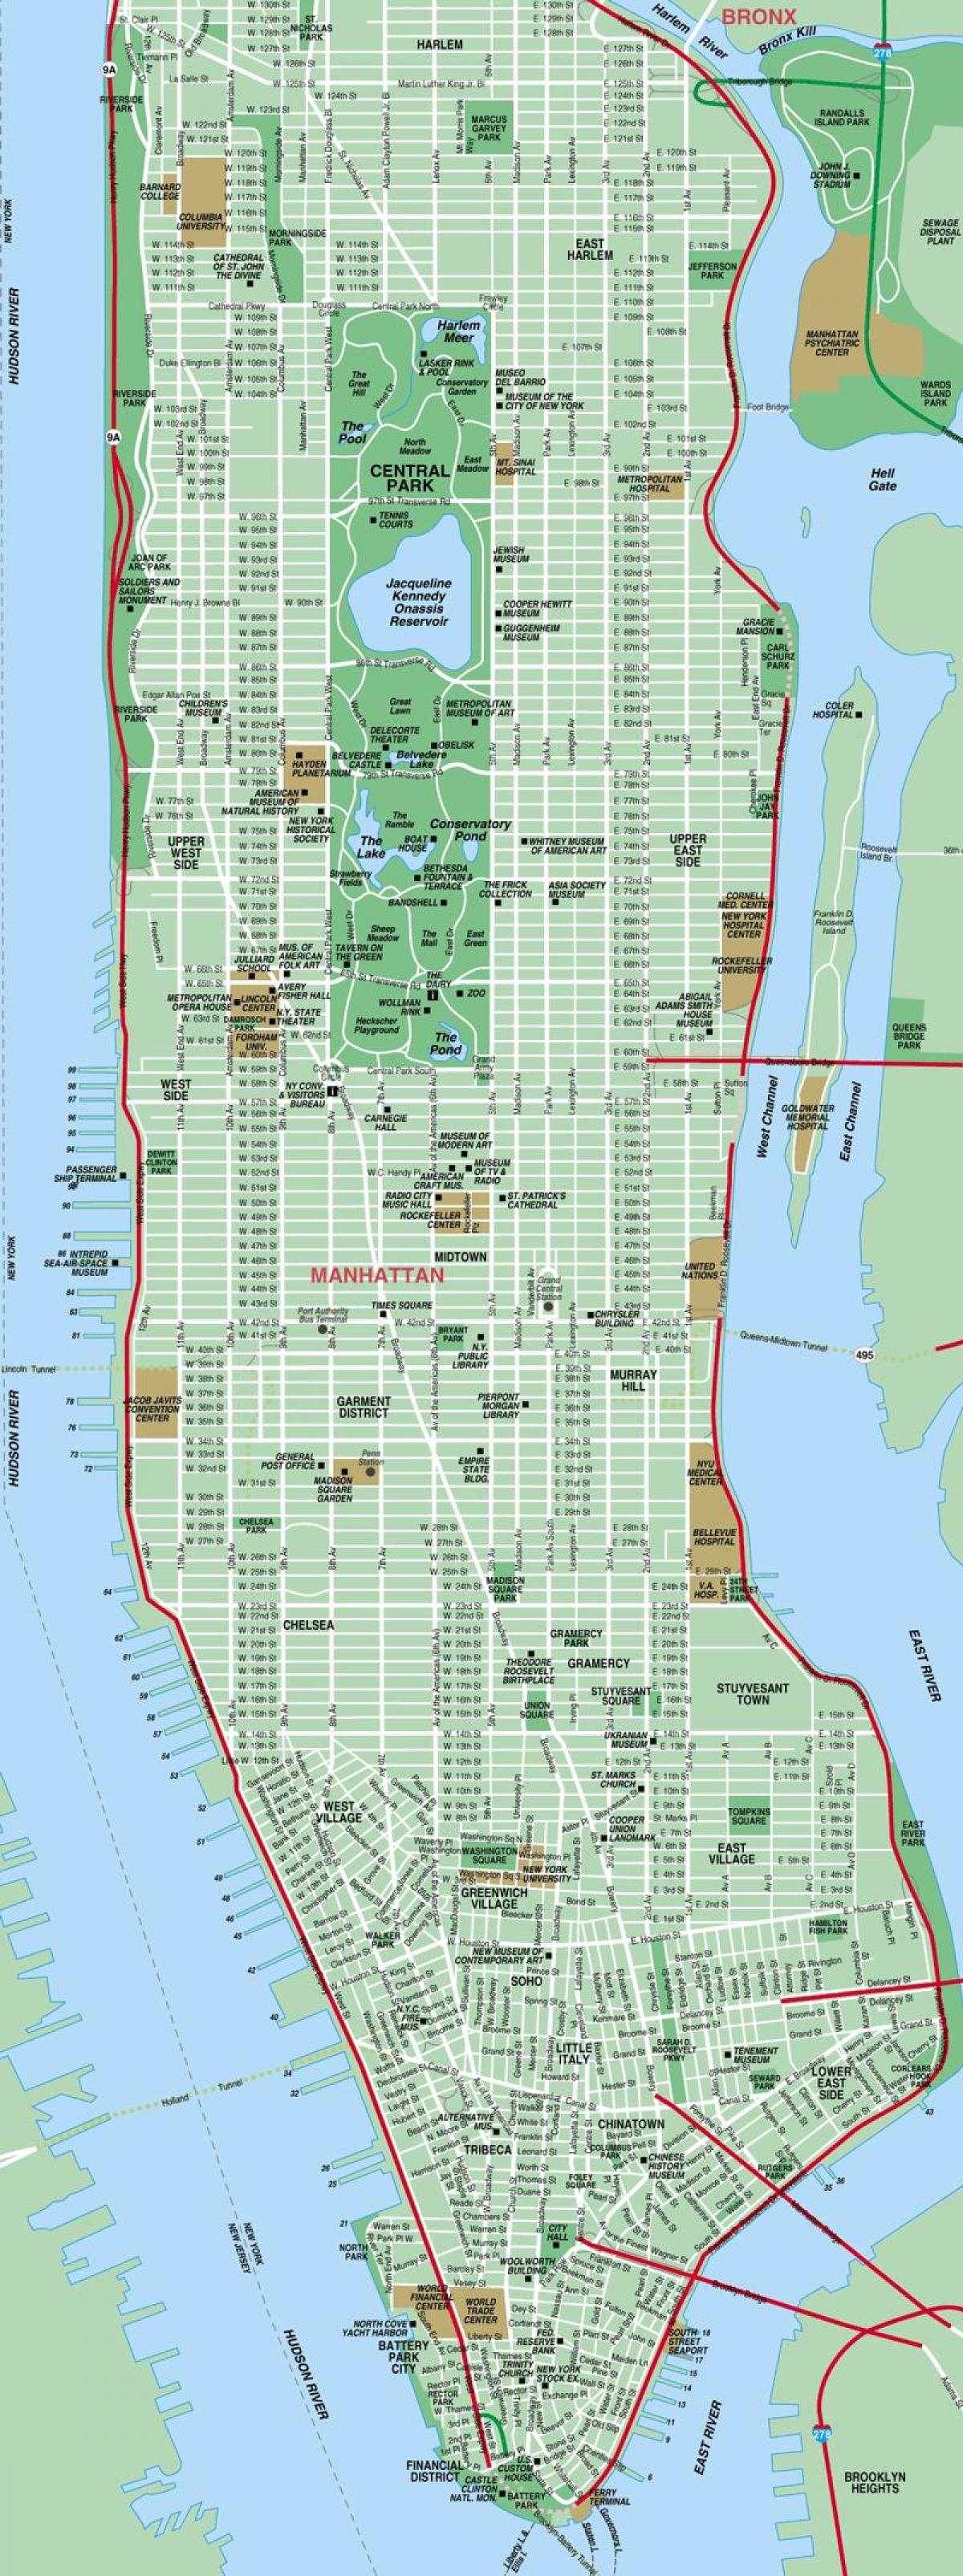 Manhattan veje kort